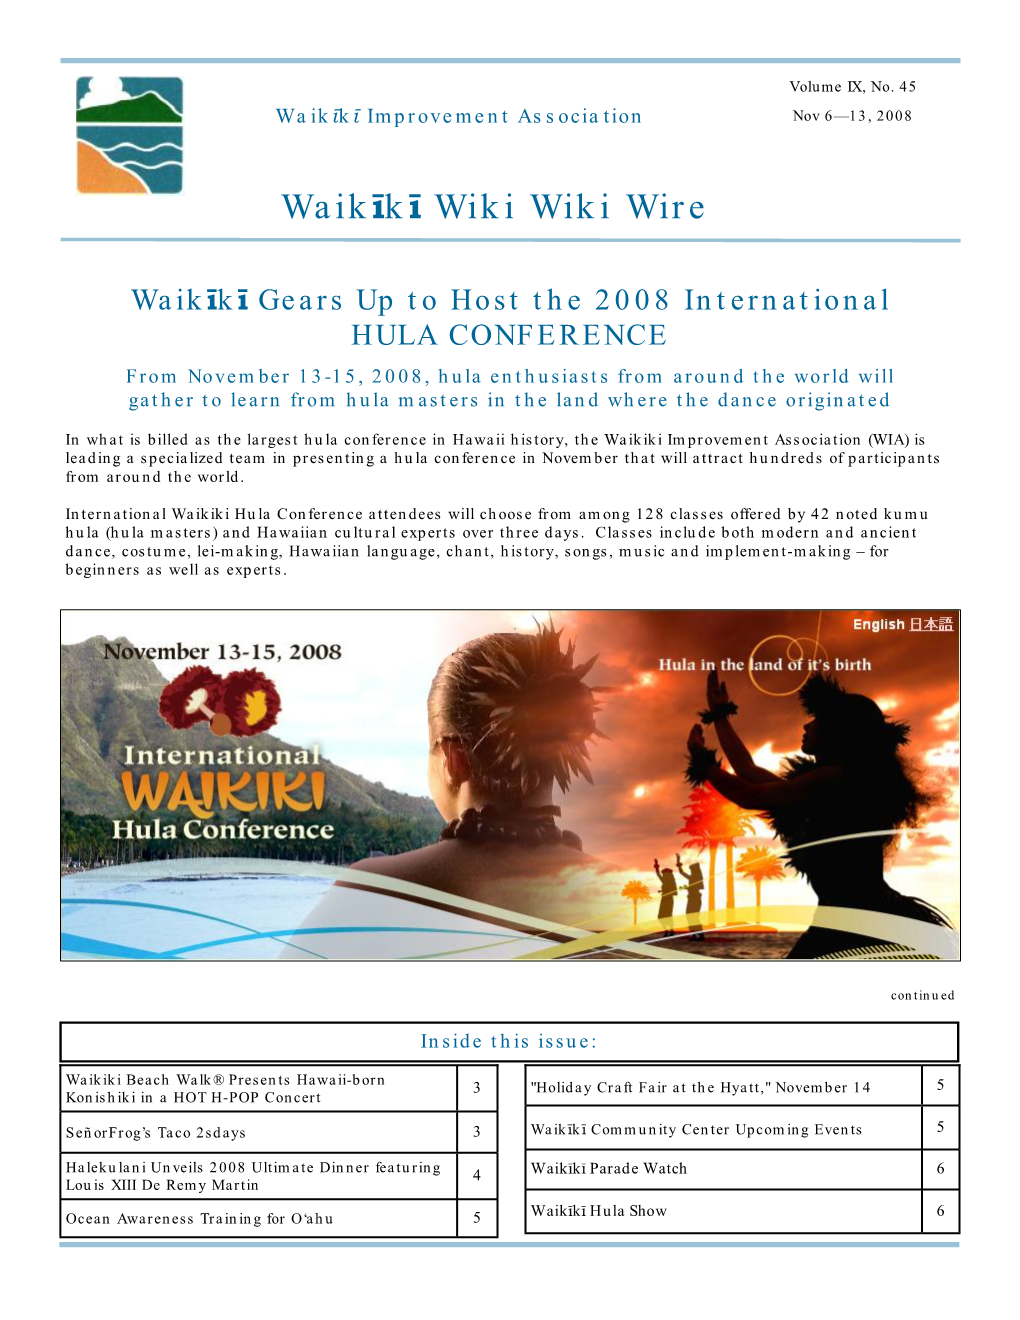 Hula Conference